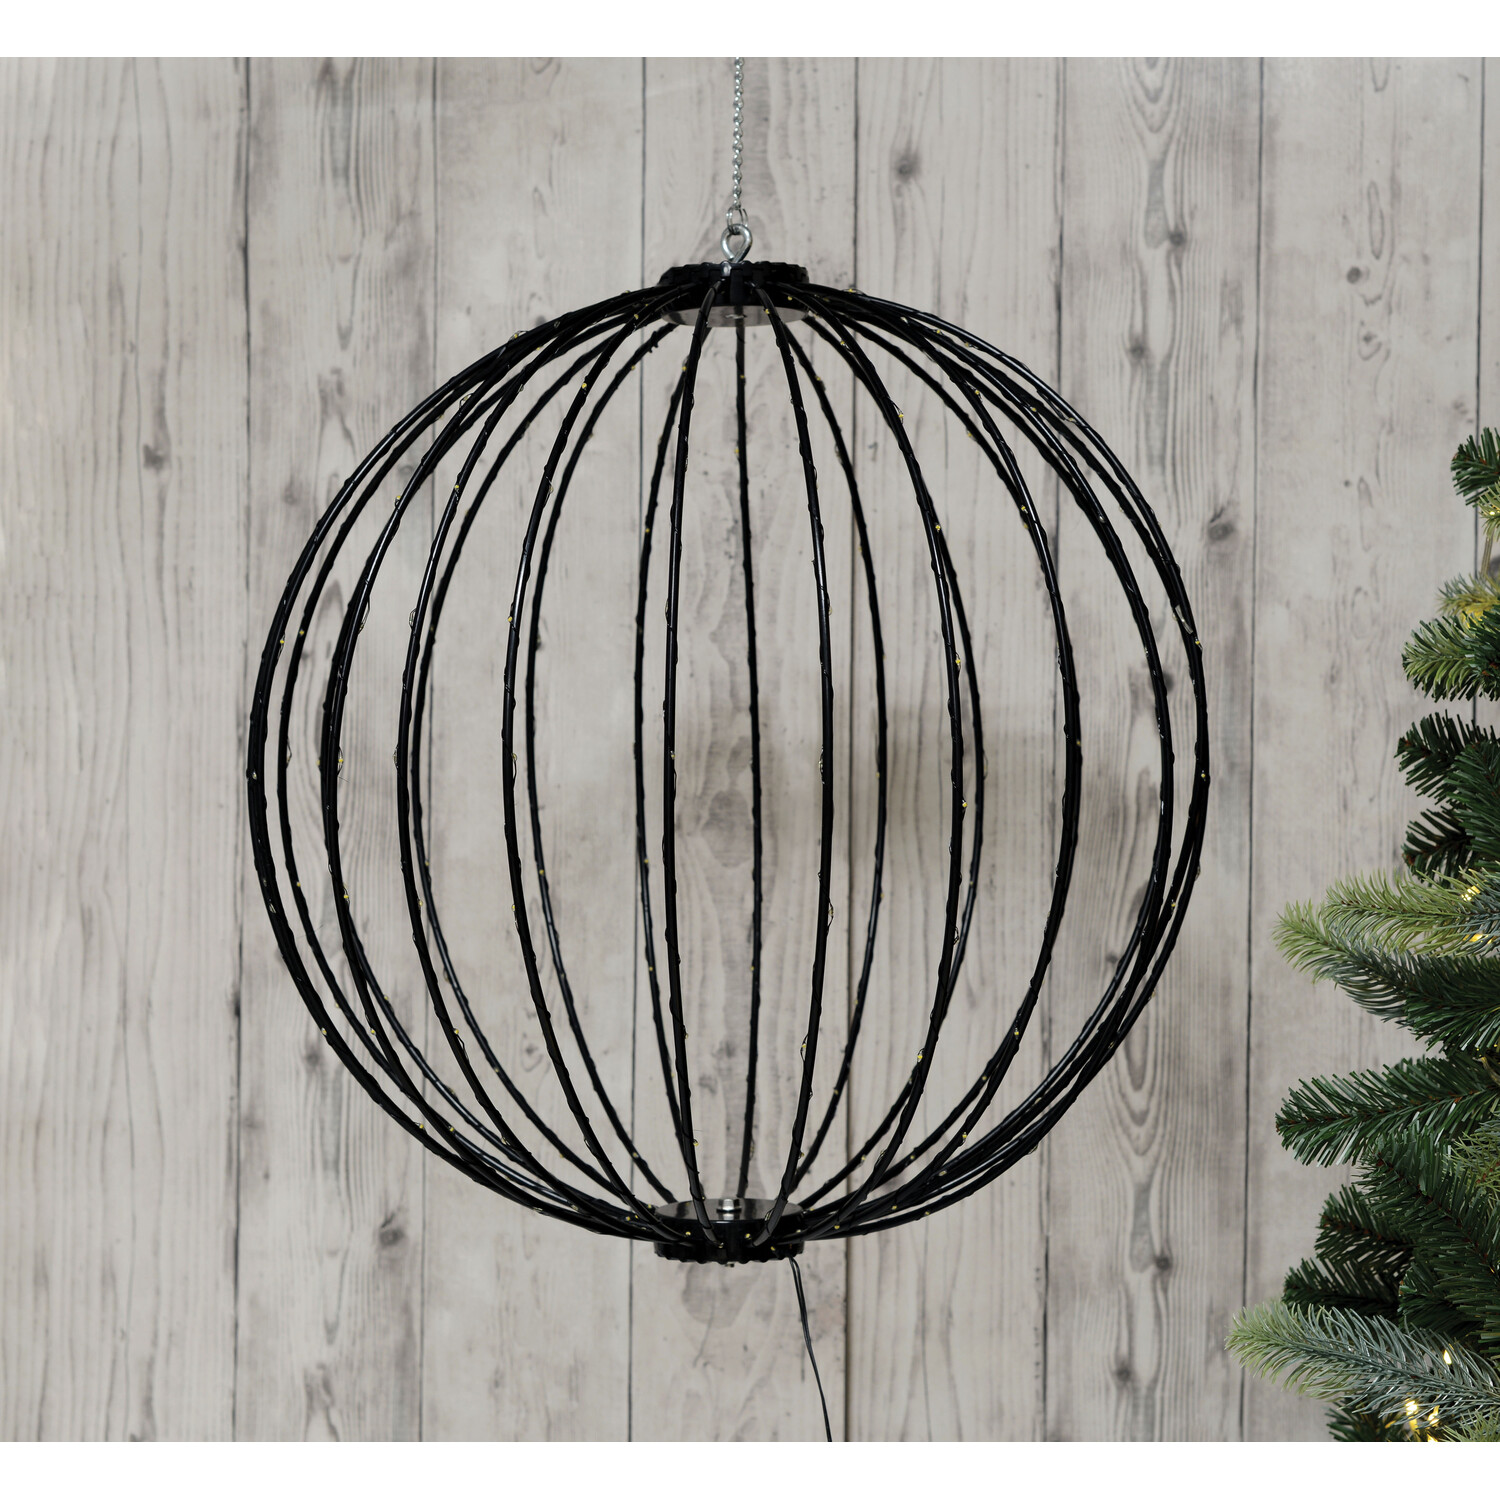 LED Christmas Light Ball - Black Image 2